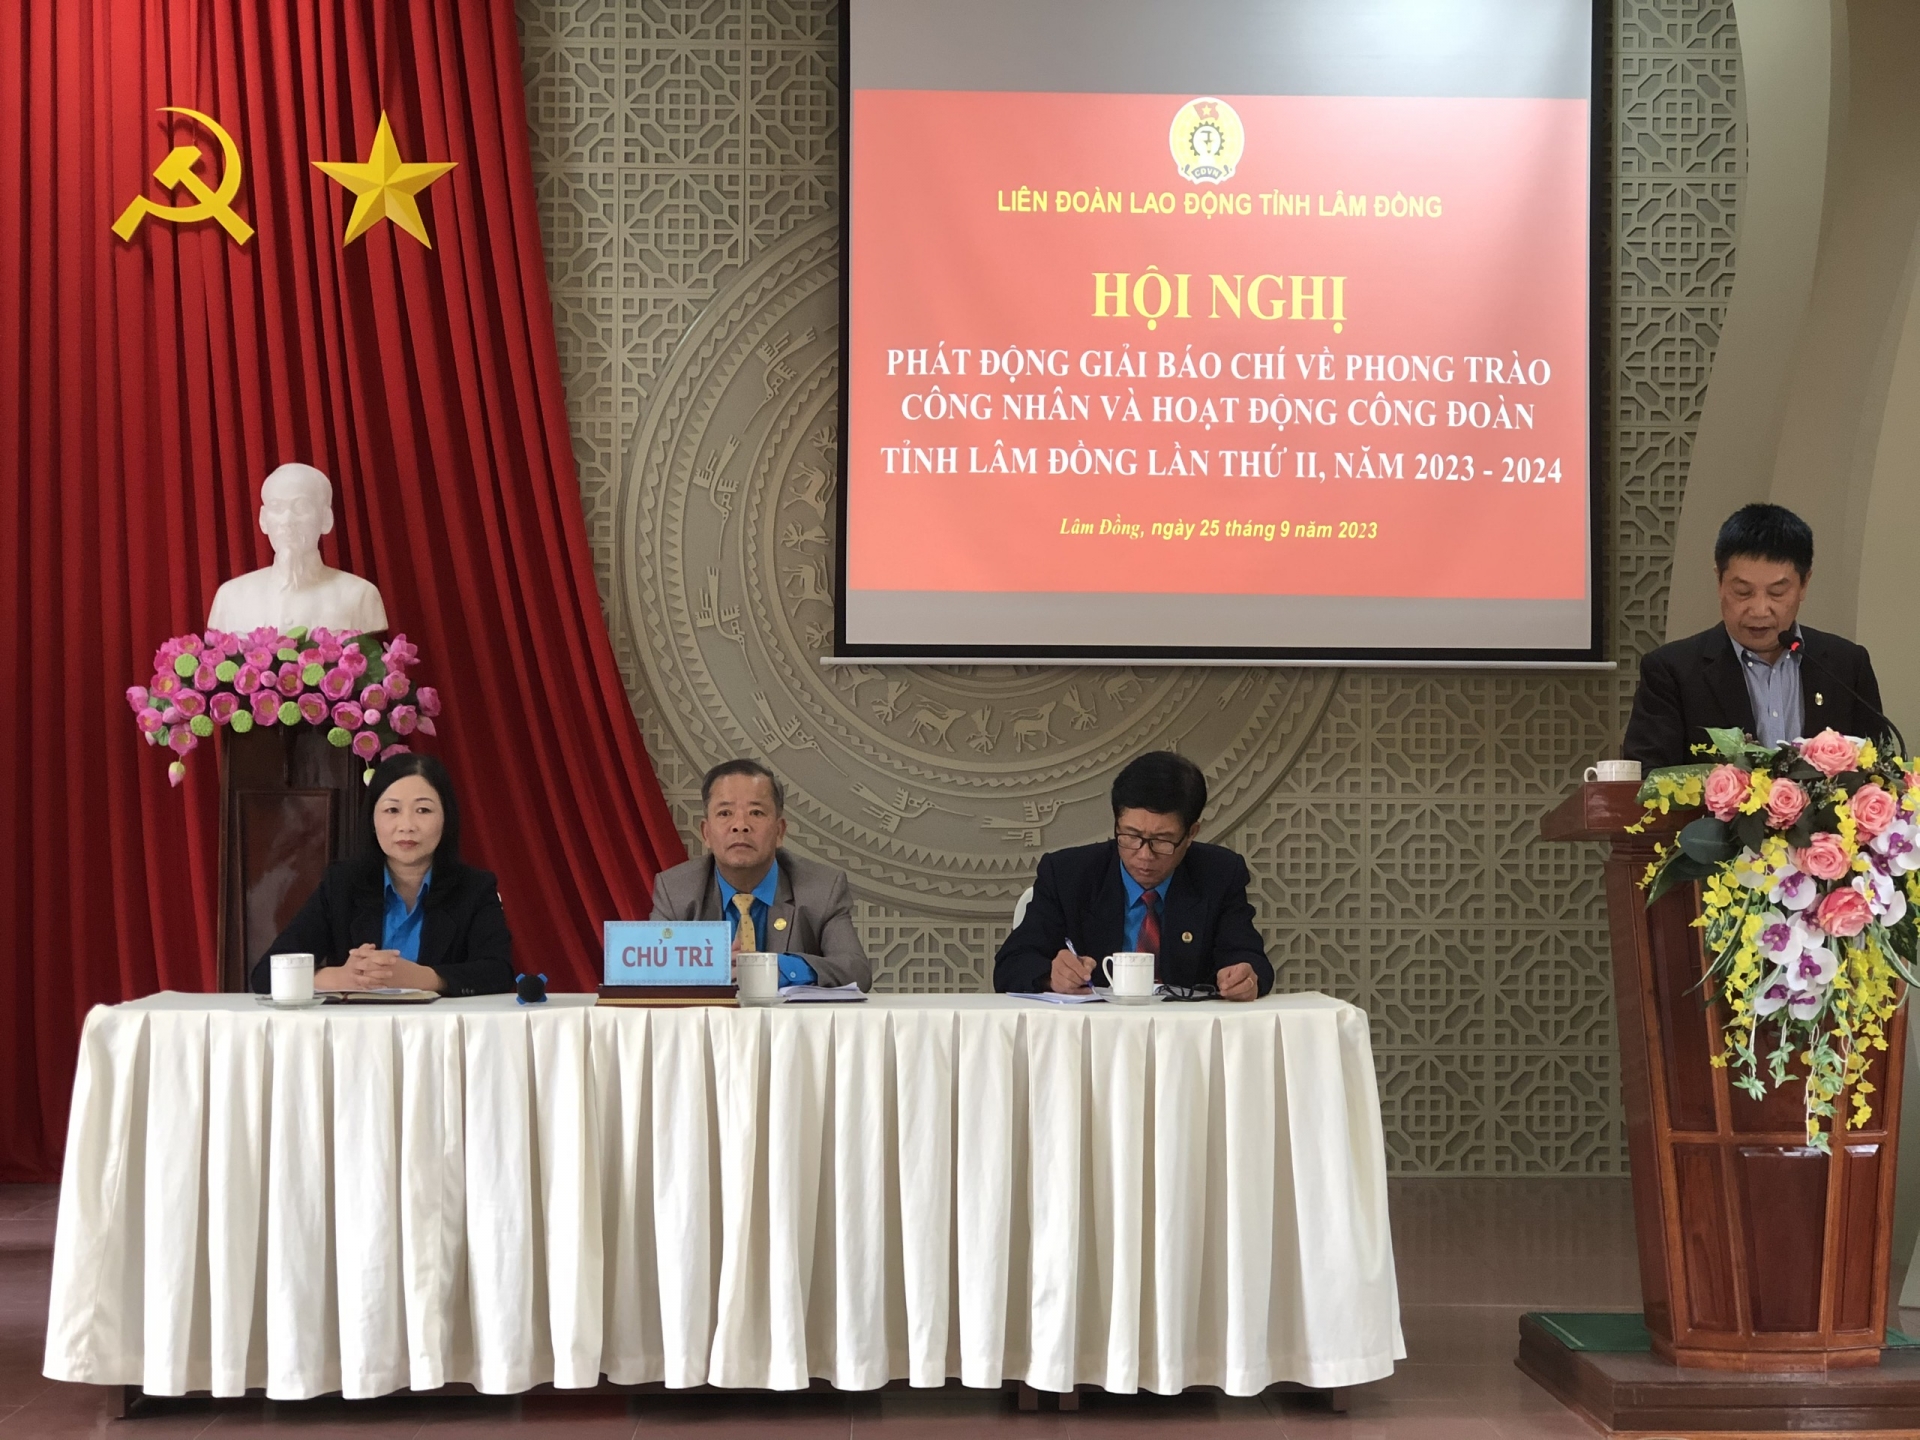 Chính thức phát động Giải Báo chí về phong trào công nhân và hoạt động Công đoàn tỉnh Lâm Đồng lần thứ II, năm 2023-2024